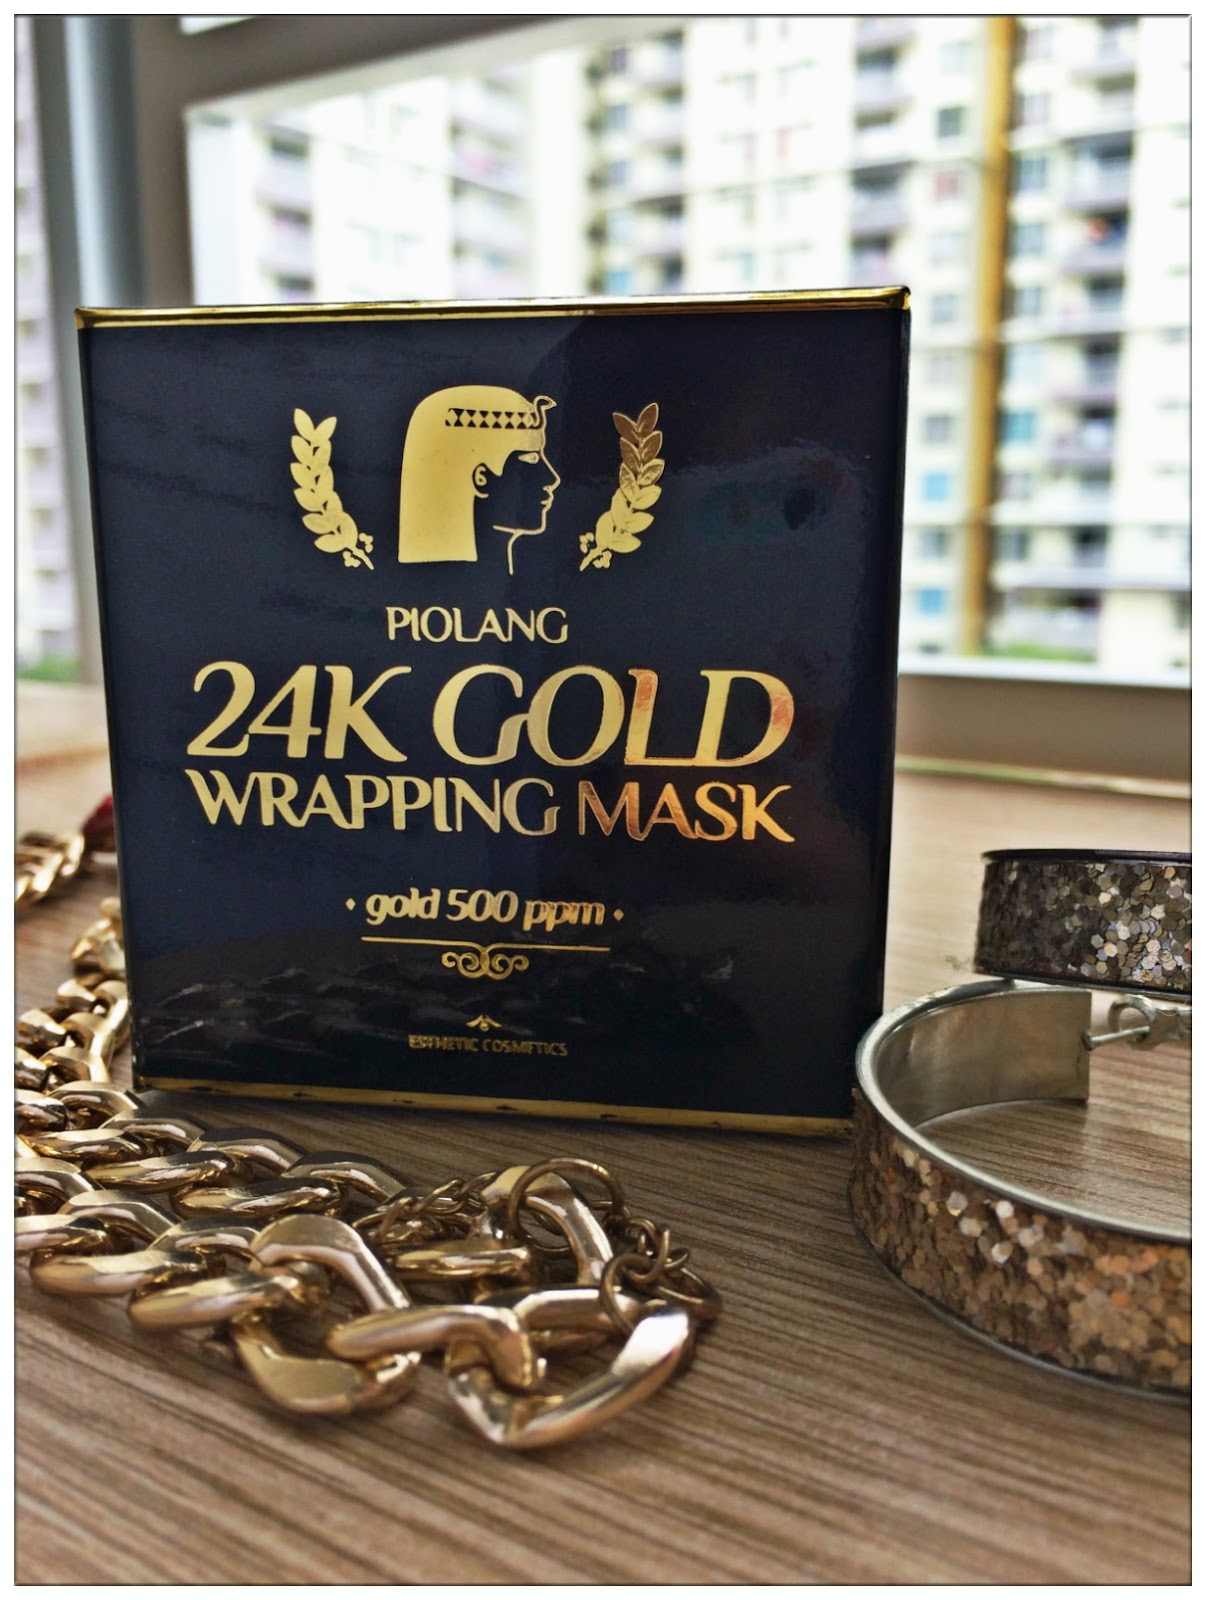 Натуральная маска для лица из Кореи с 24 каратным золотом ESTHETIC HOUSE PIOLANG 24k GOLD WRAPPING MASK купить в Москве и Московской области